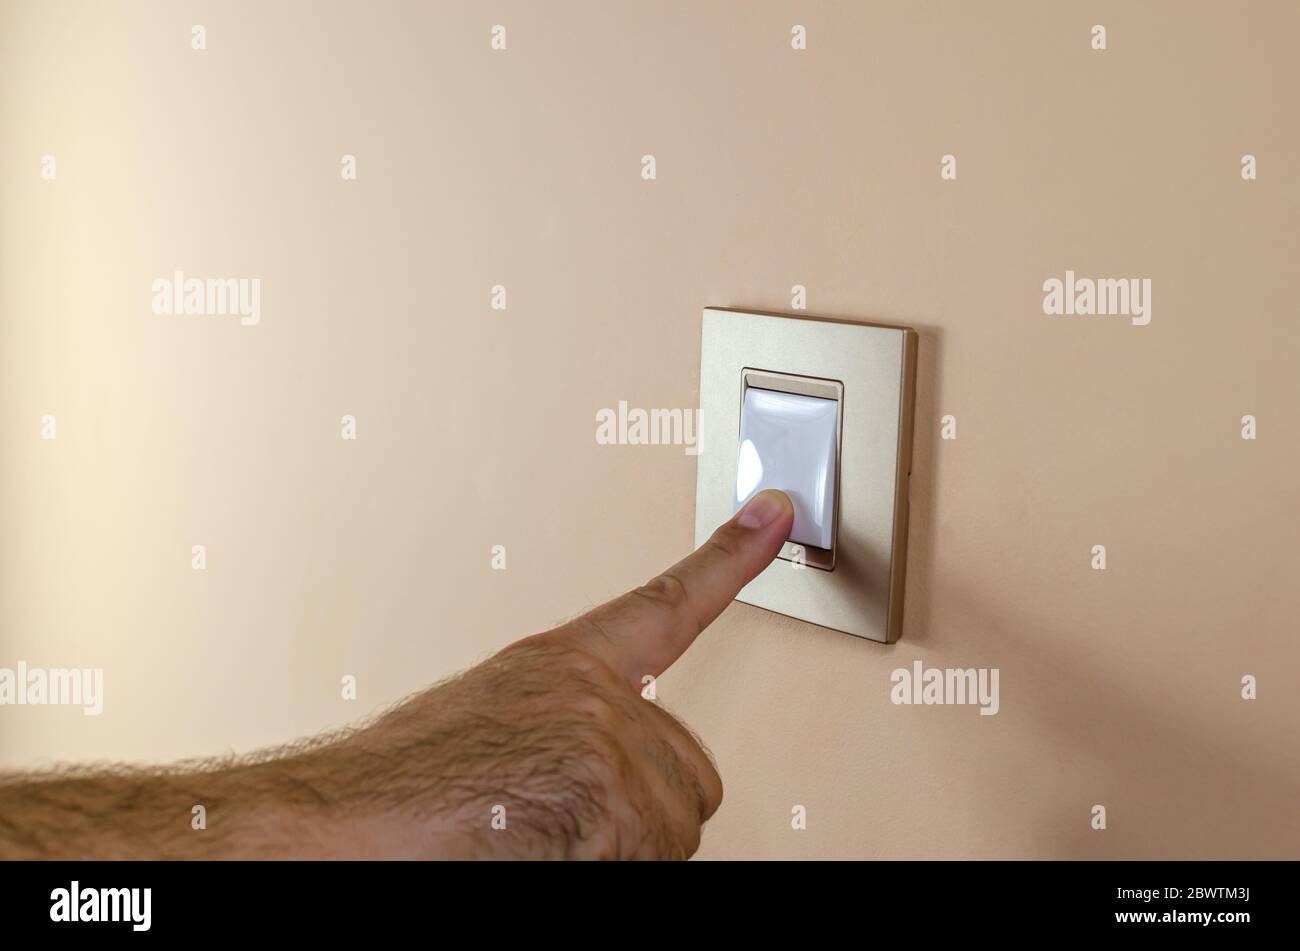 Premere manualmente il pulsante di un interruttore luci per accendere o  spegnere la luce Foto stock - Alamy